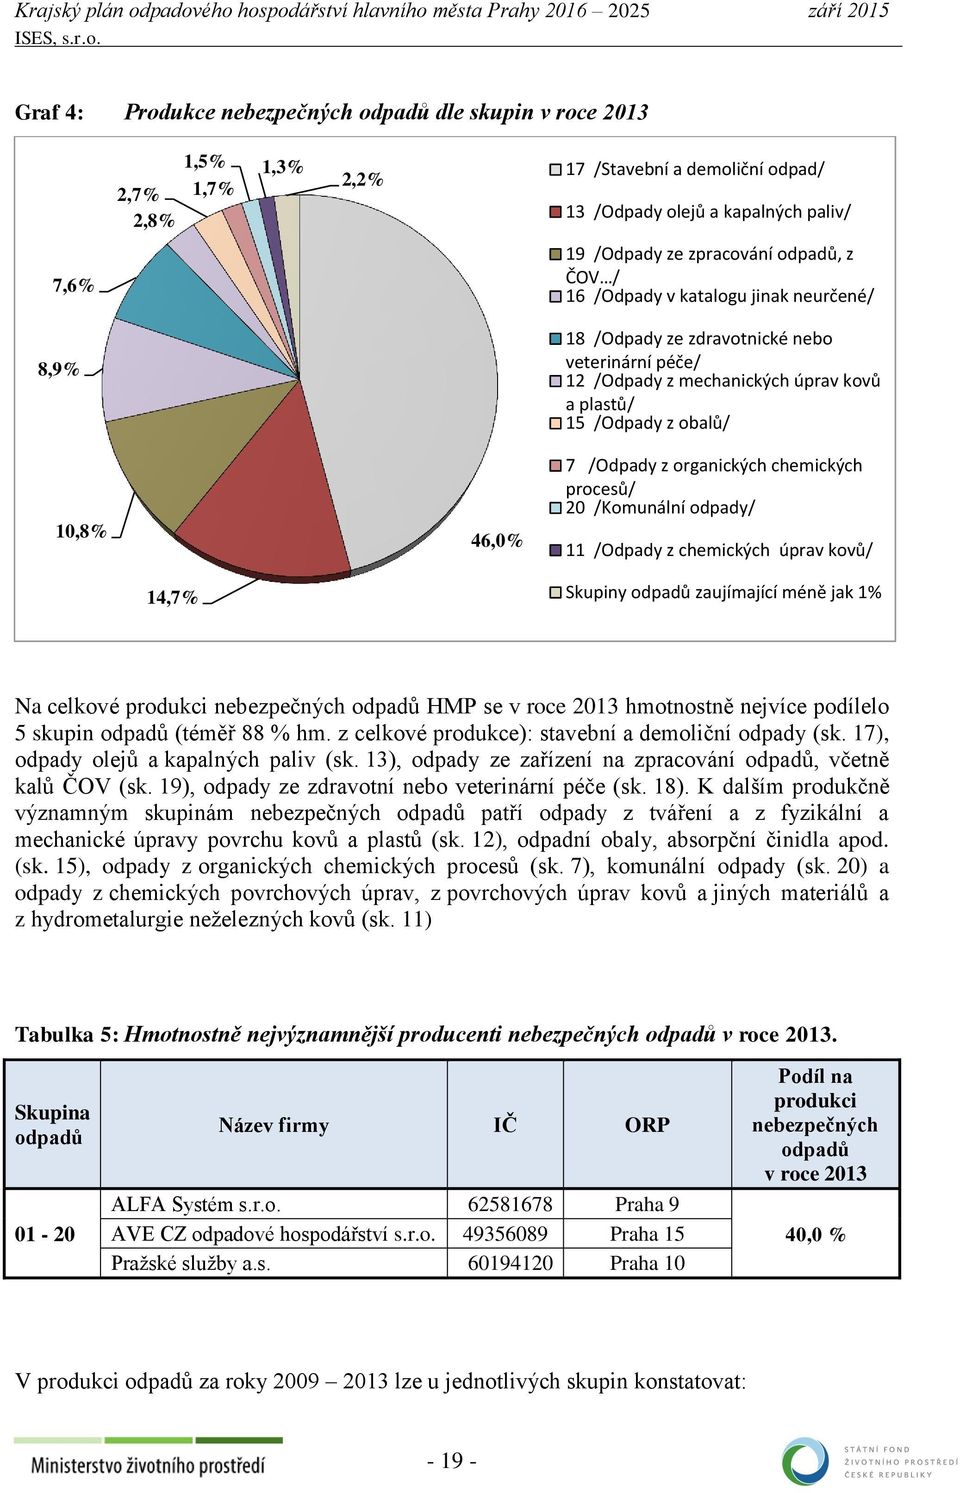 organických chemických procesů/ 20 /Komunální odpady/ 11 /Odpady z chemických úprav kovů/ 14,7% Skupiny odpadů zaujímající méně jak 1% Na celkové produkci nebezpečných odpadů HMP se v roce 2013